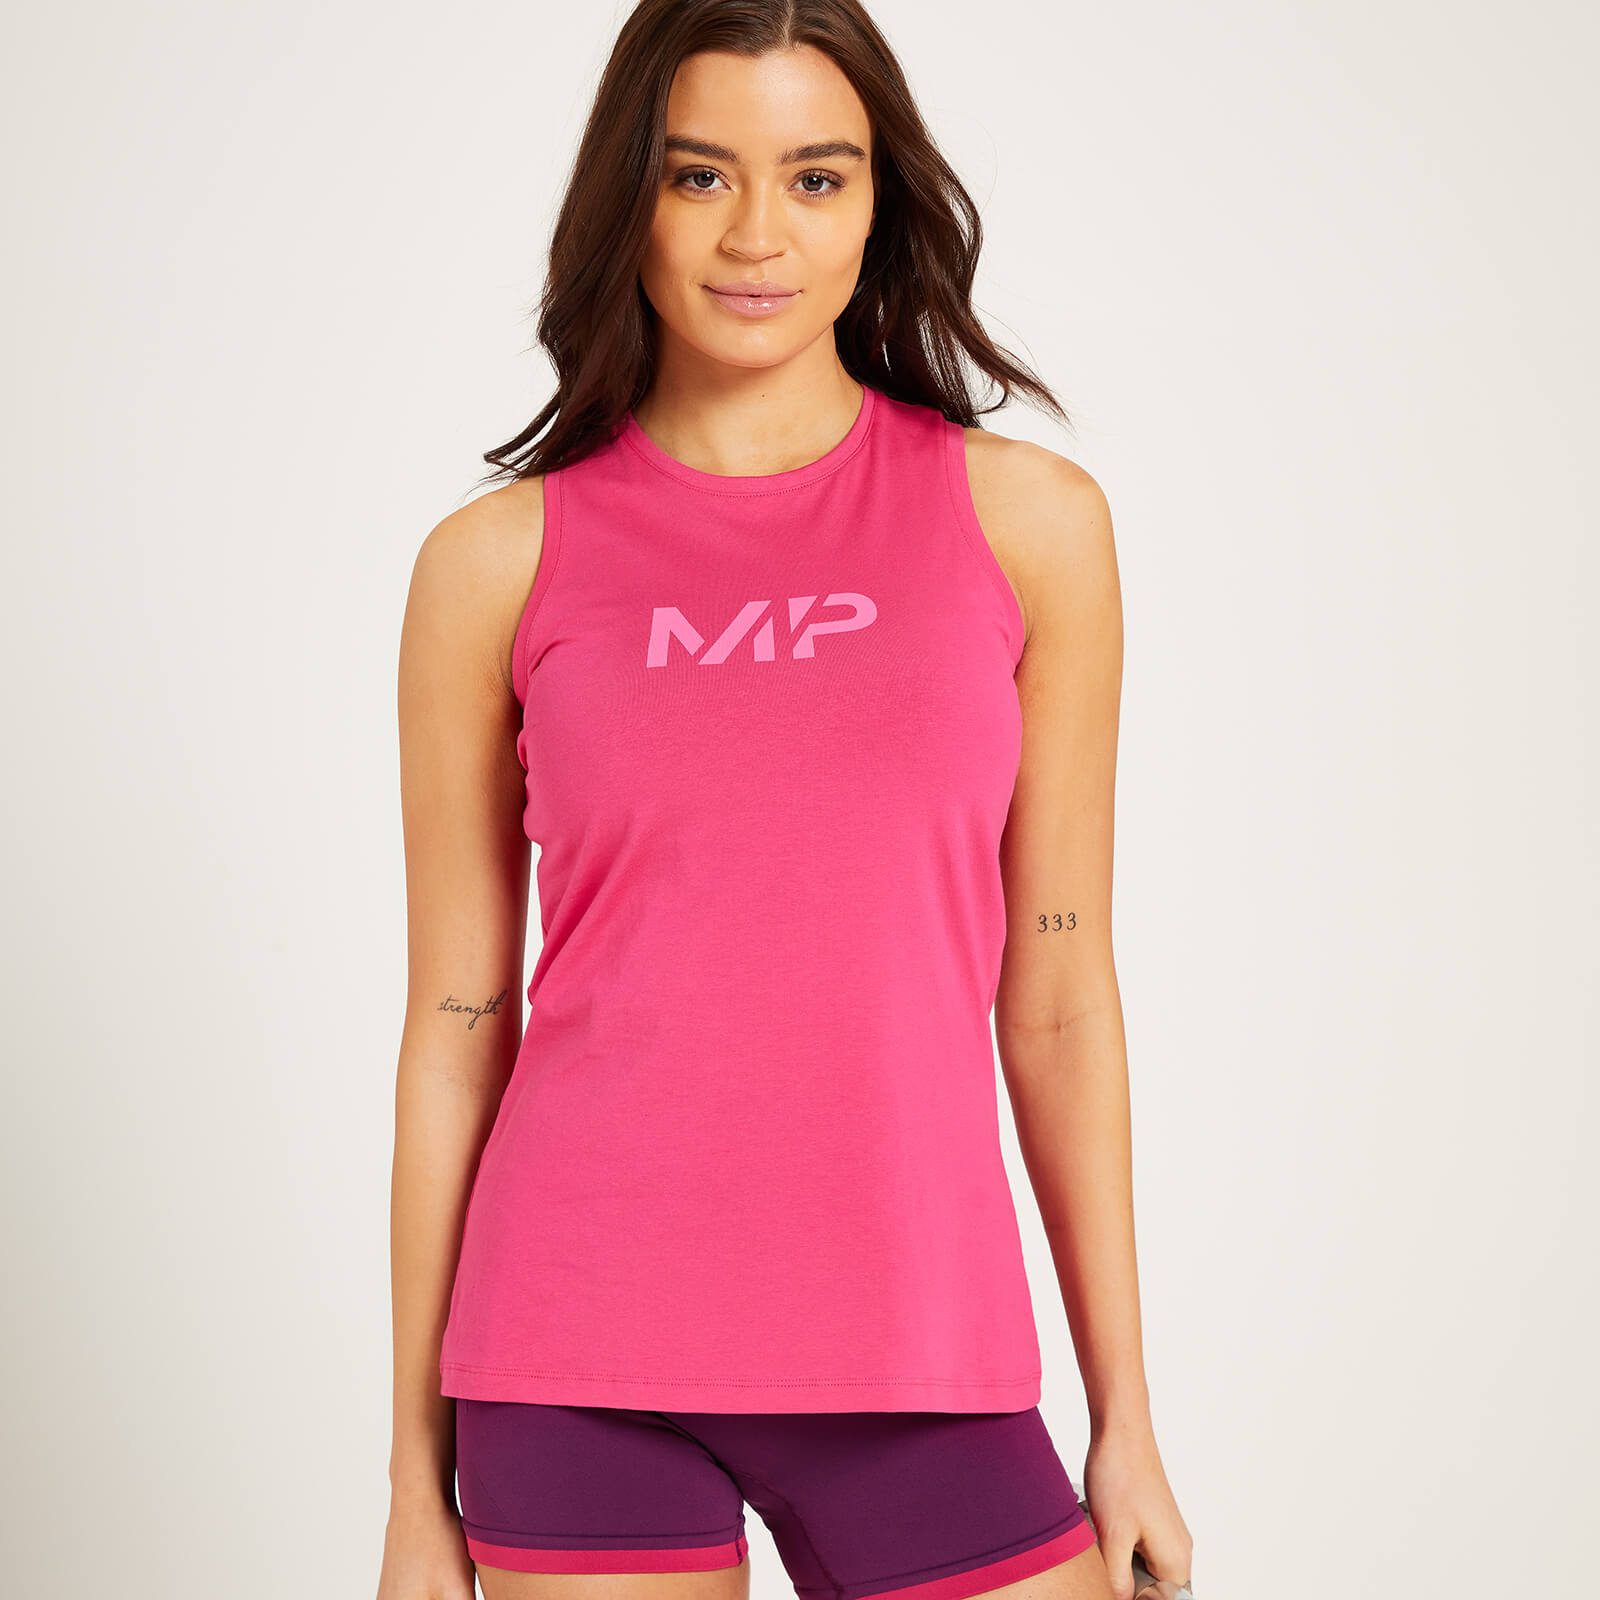 Camiseta sin mangas con espalda nadadora Adapt para mujer de MP - Magenta - XS